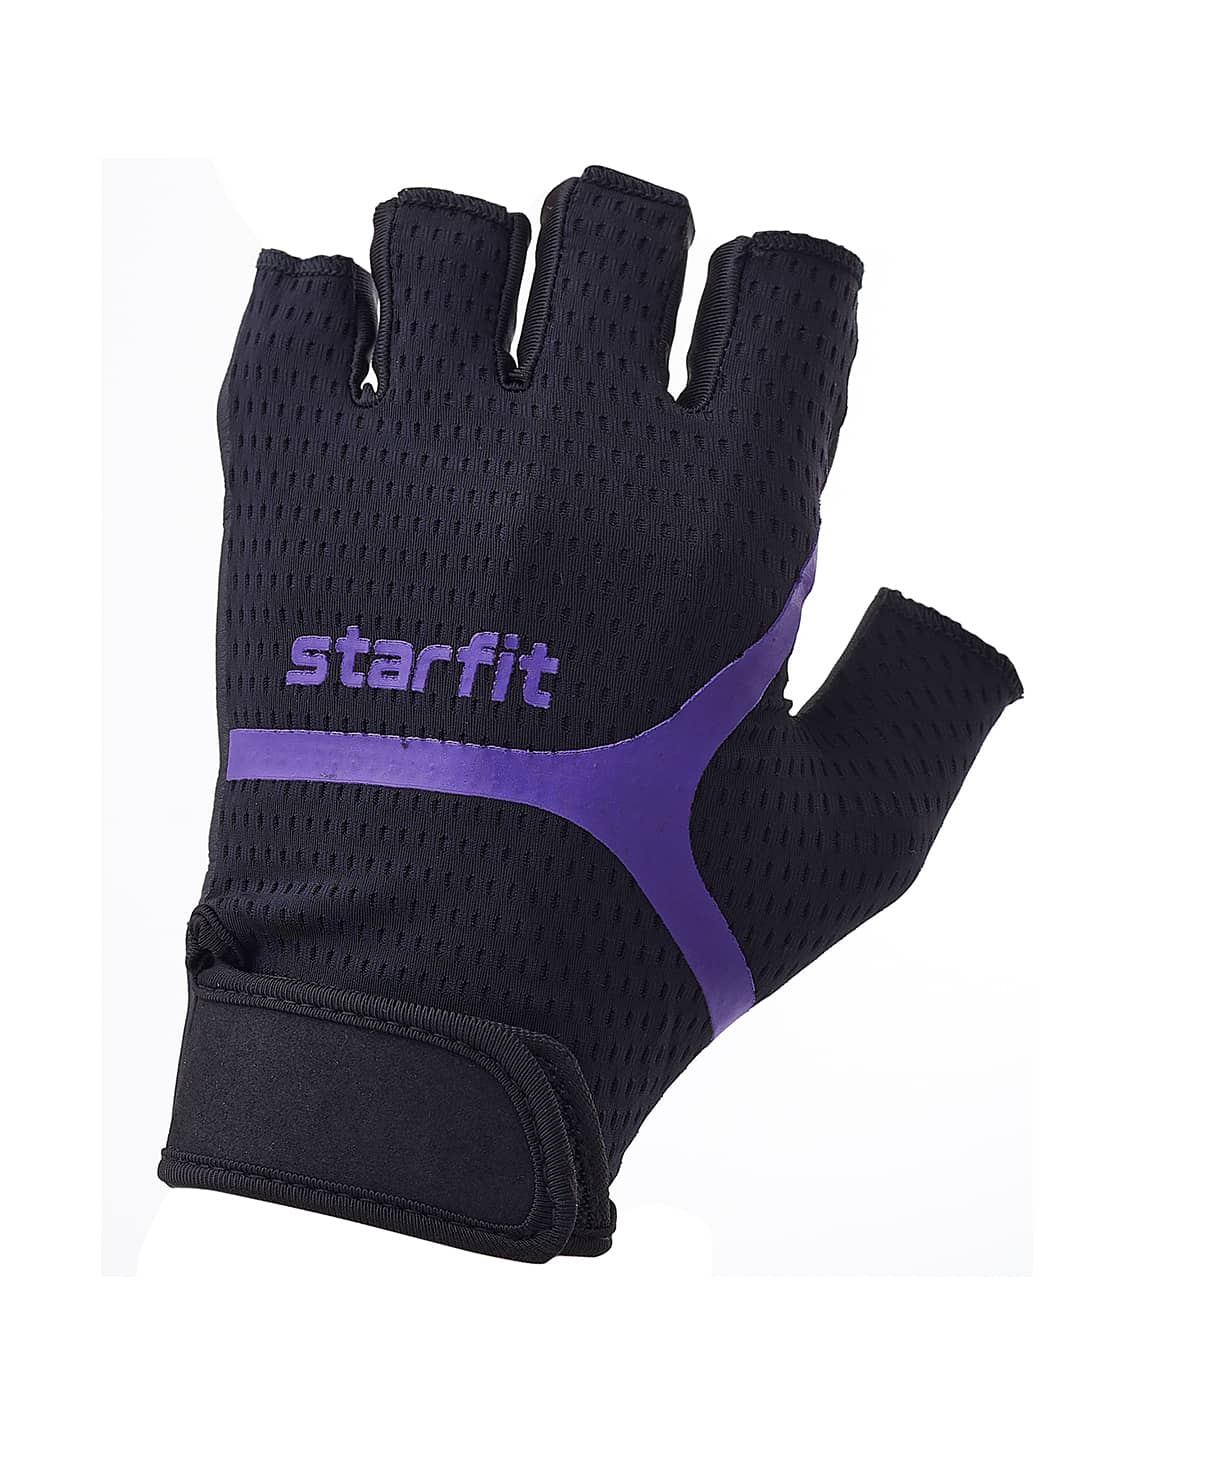 Перчатки для фитнеса Star Fit WG-103, черный/фиолетовый 1230_1479